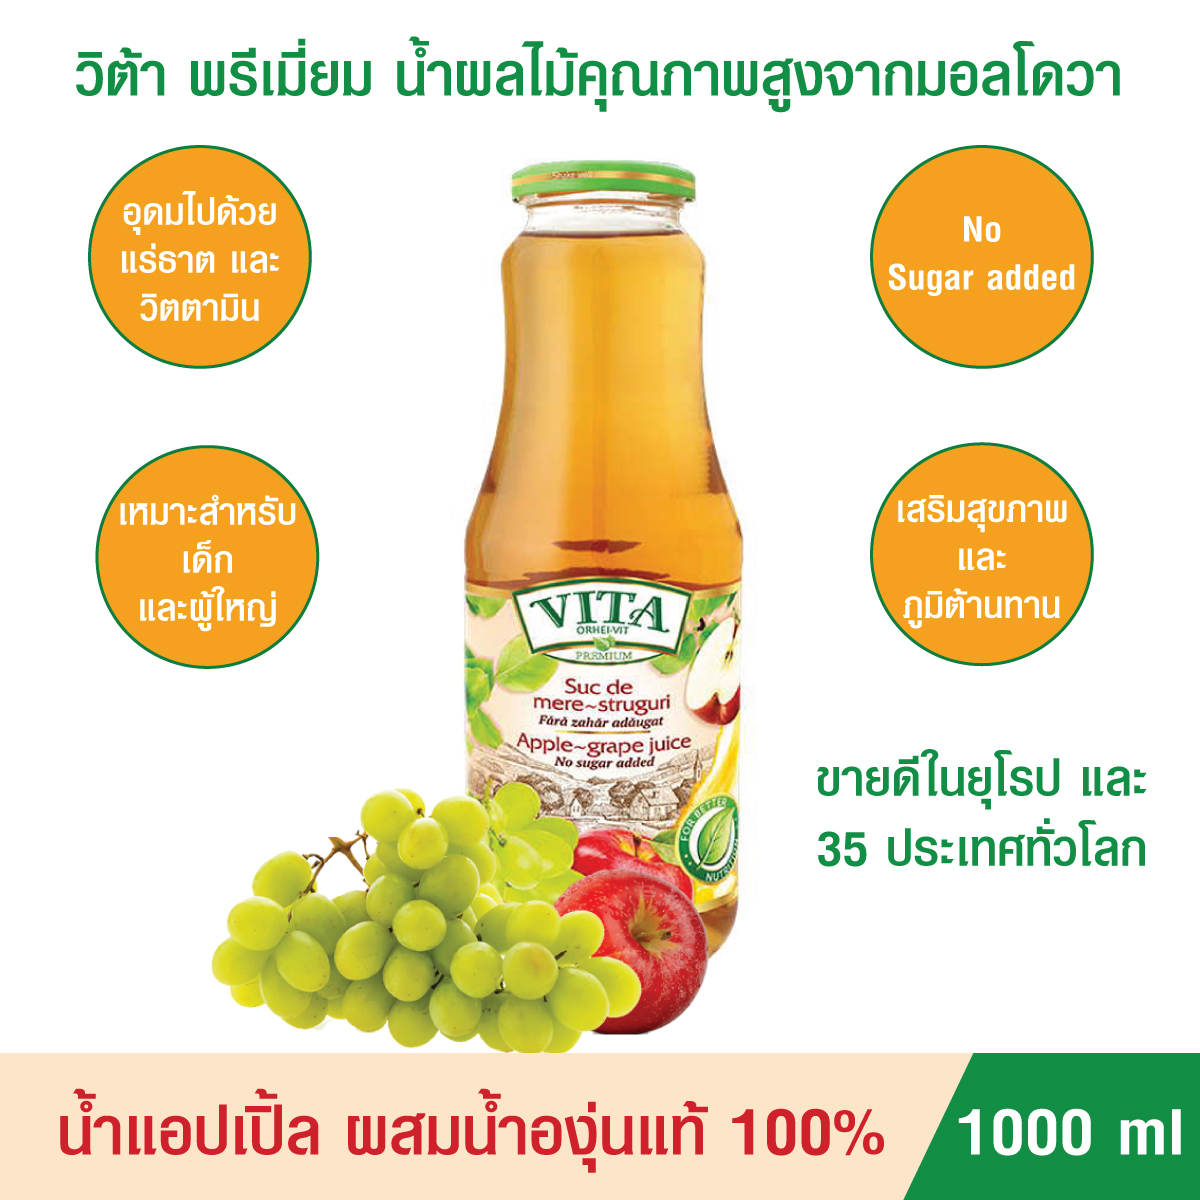 น้ำผลไม้เข้มข้น VITA ORHEI-VIT Apple Grape Juice 1000 mL น้ำแอปเปิ้ลผสมน้ำองุ่นสกัดแท้ 100% ไม่ผสมน้ำตาล เพื่อสุขภาพและเสริมภูมิต้านทาน ขายดีในยุโรป